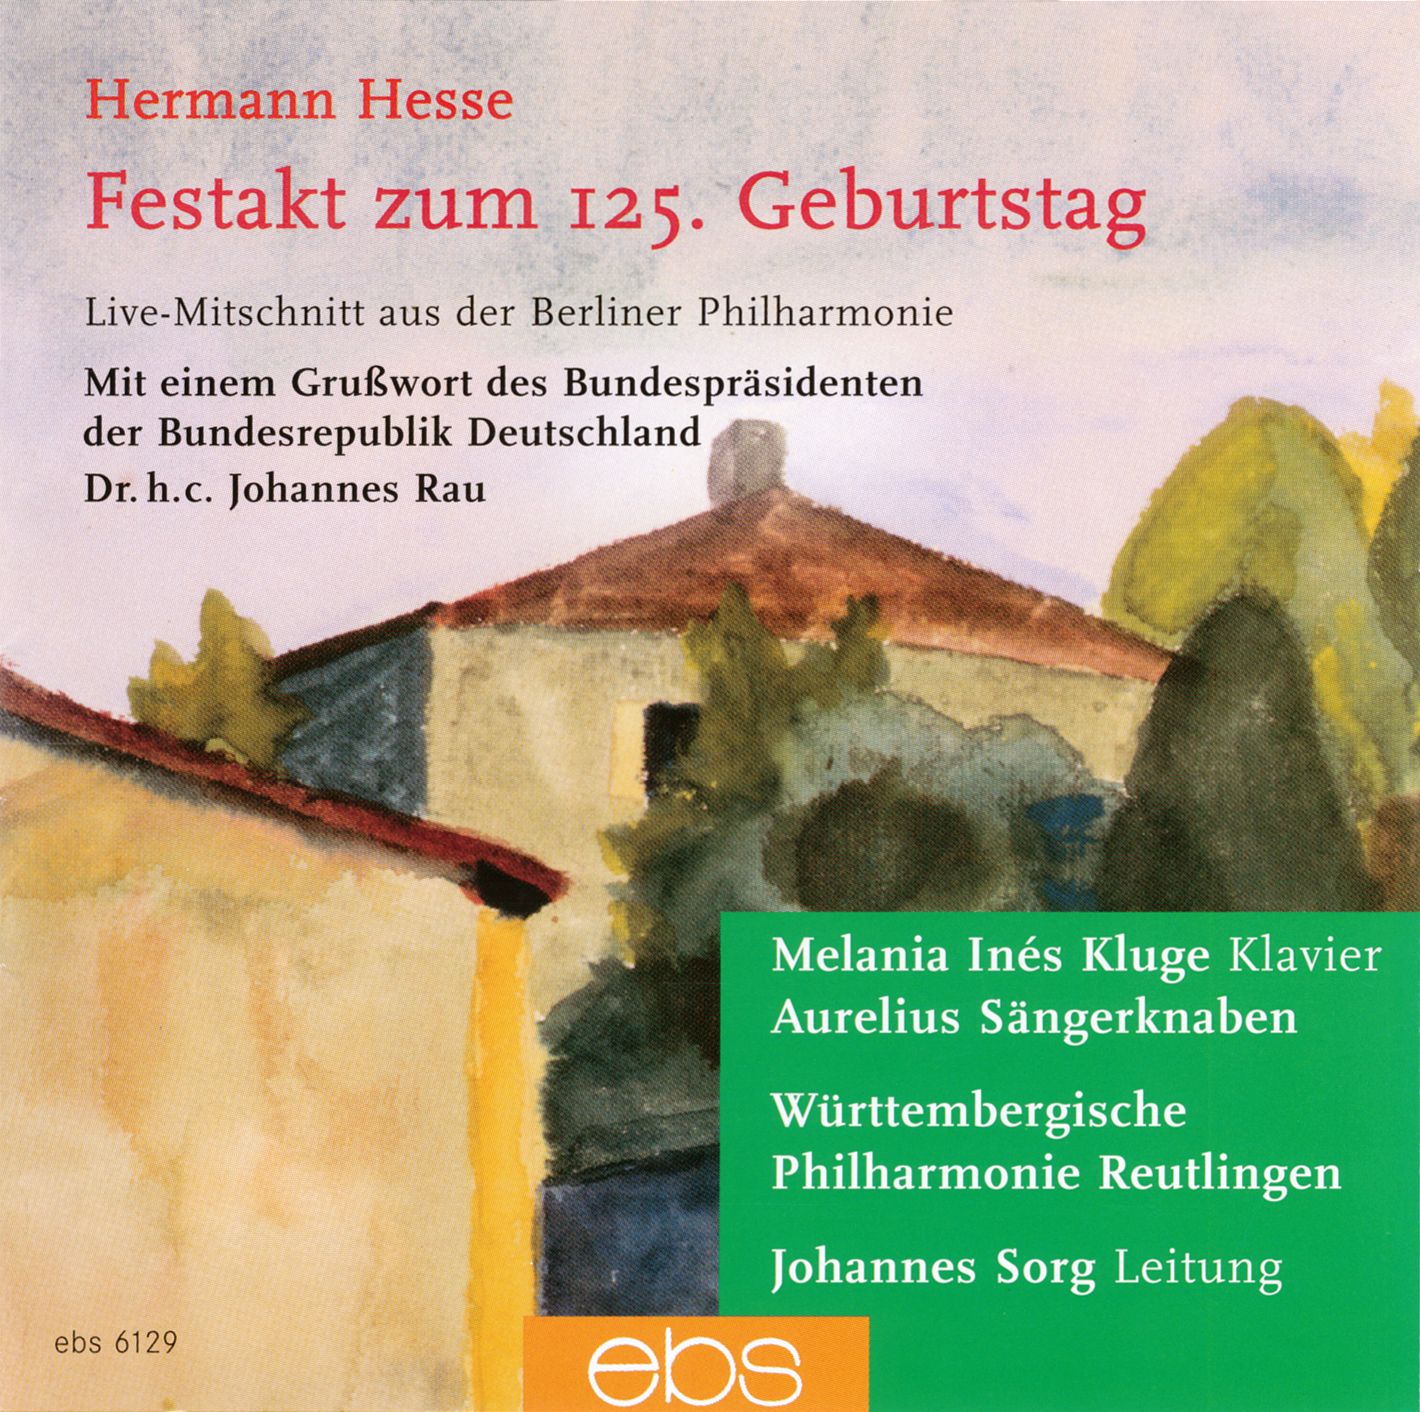 Festakt zum 125. Geburtstag von Hermann Hesse